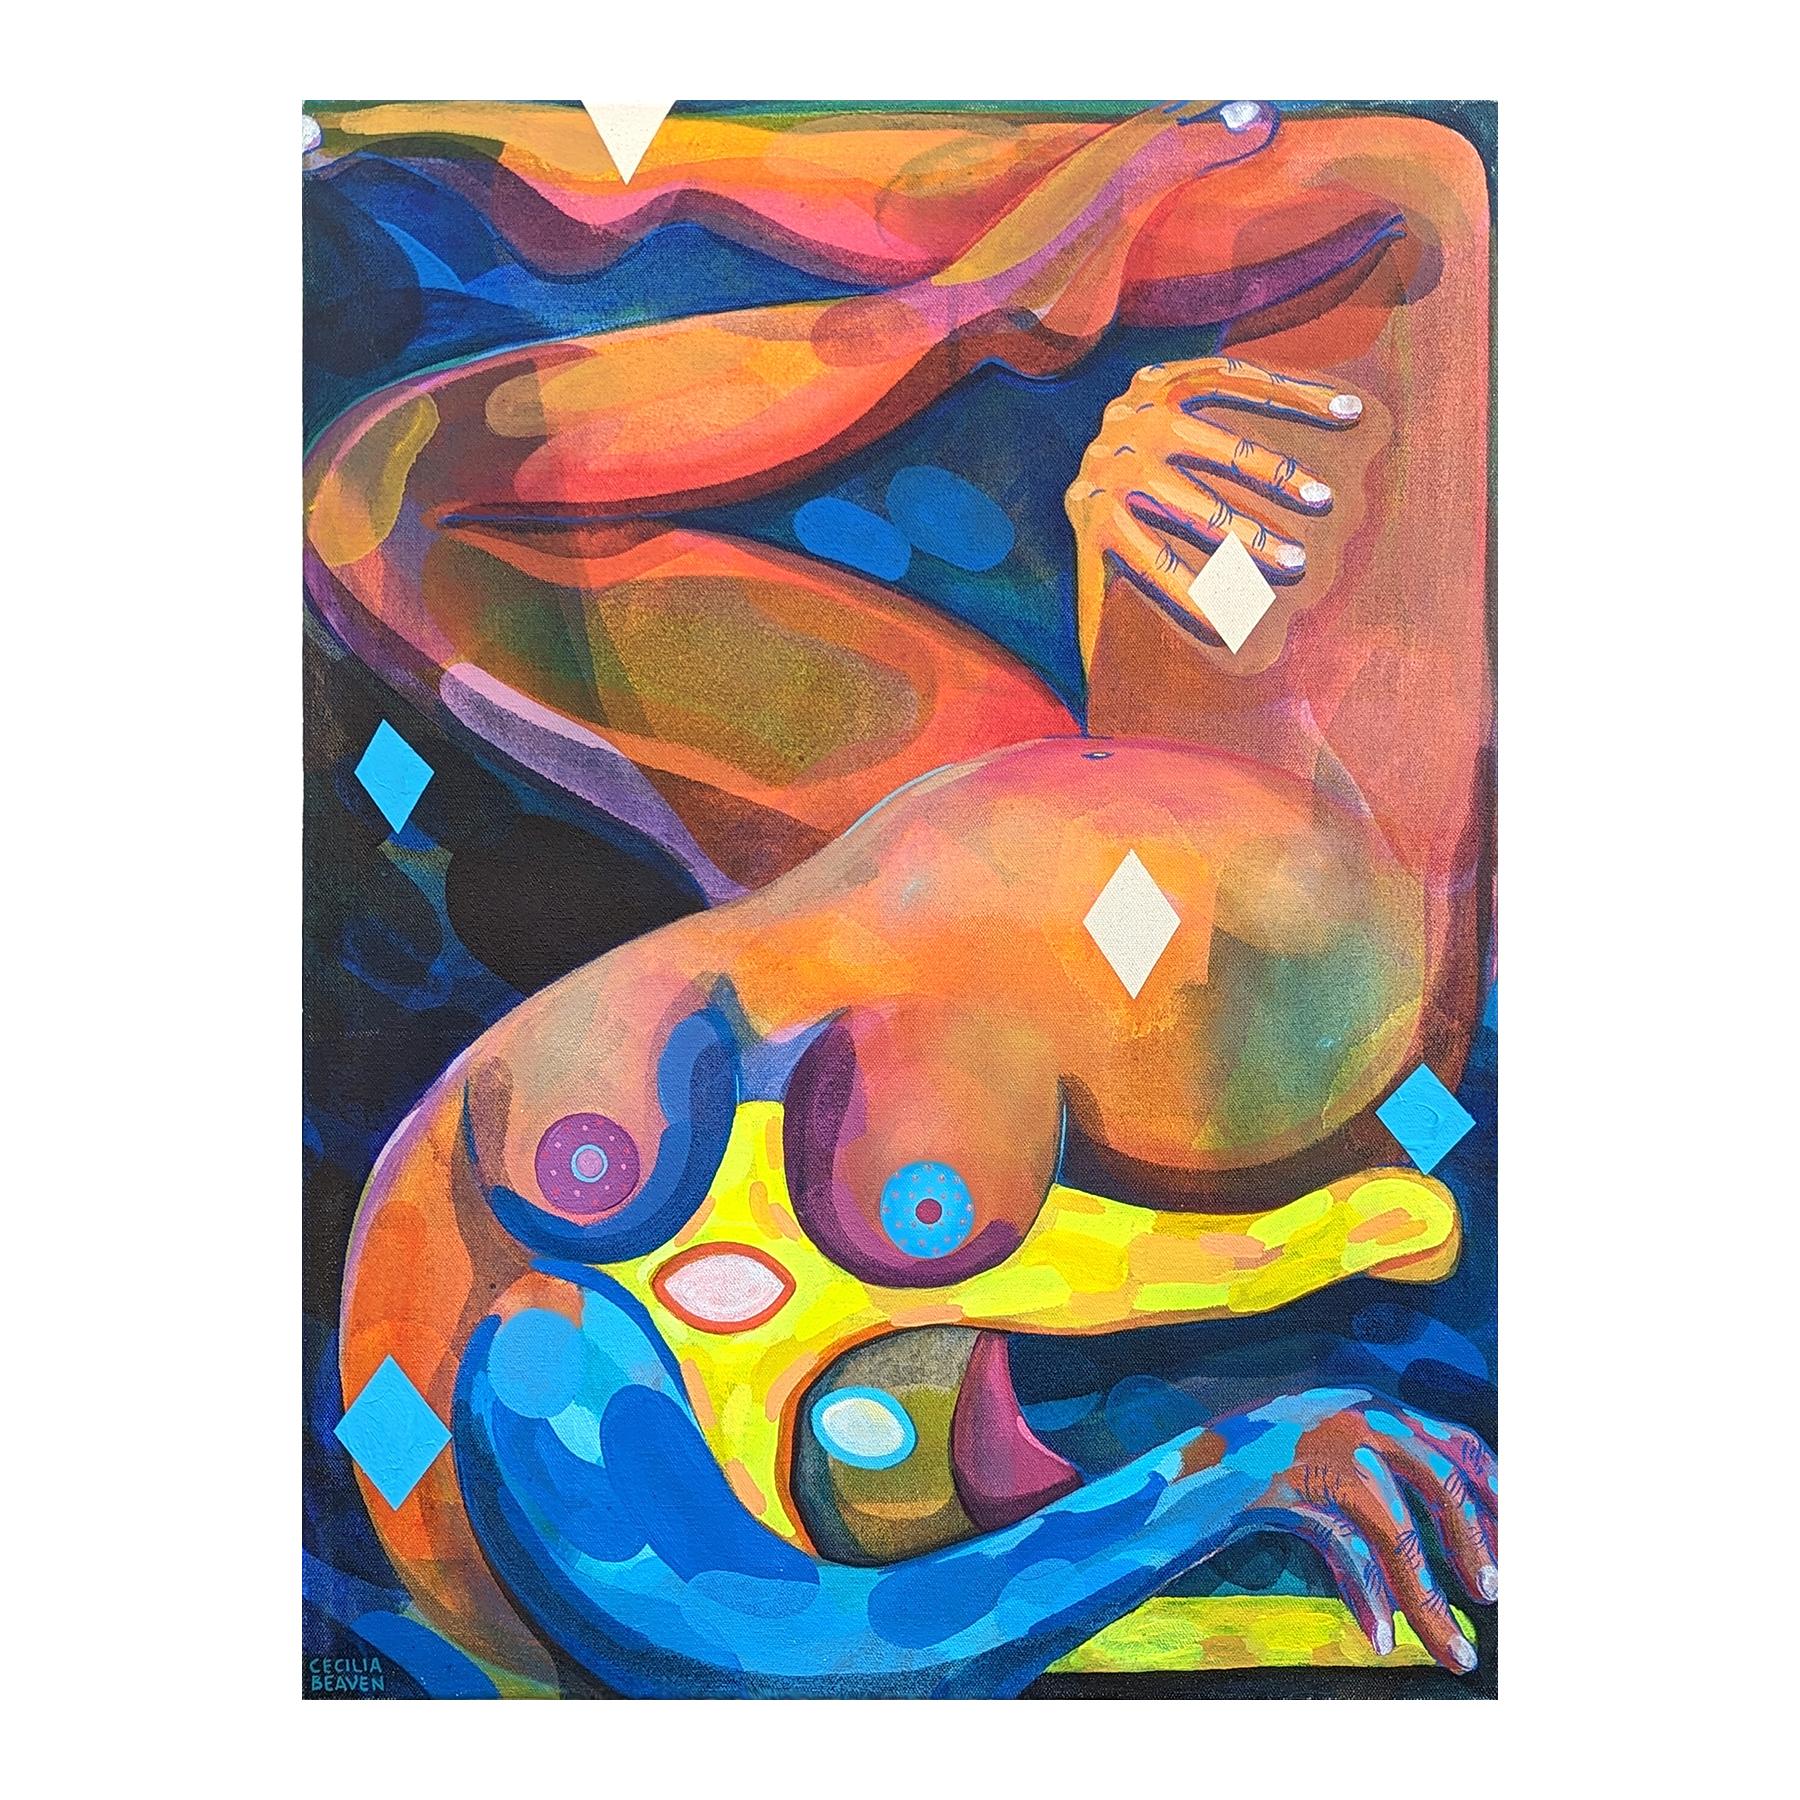 Peinture abstraite contemporaine de figure biomorphique en alligator aux tons orange et bleu - Painting de Cecilia Beaven